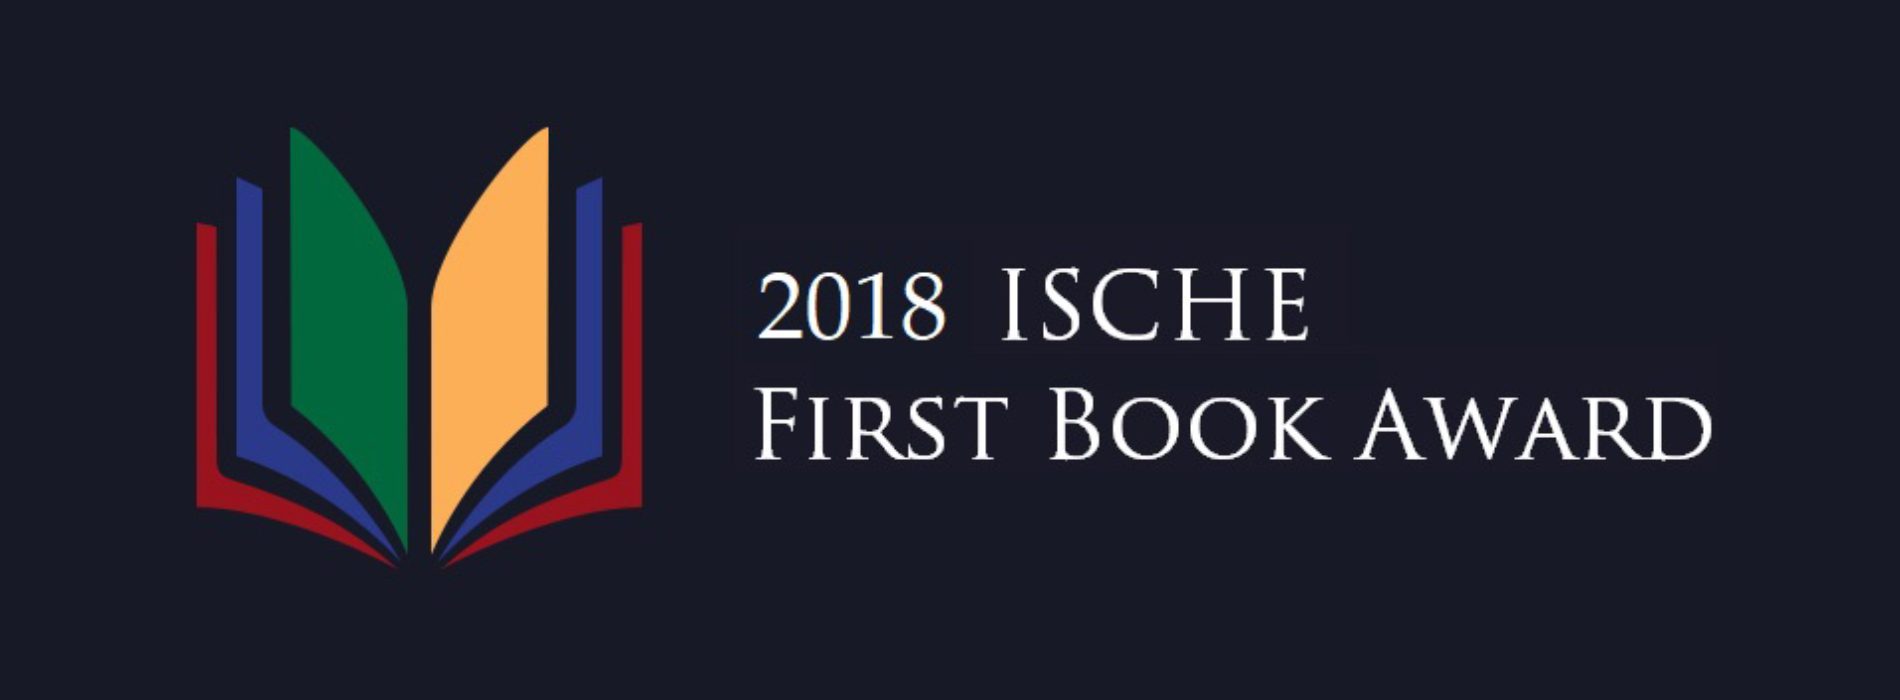 2018 First Book Award Announcement